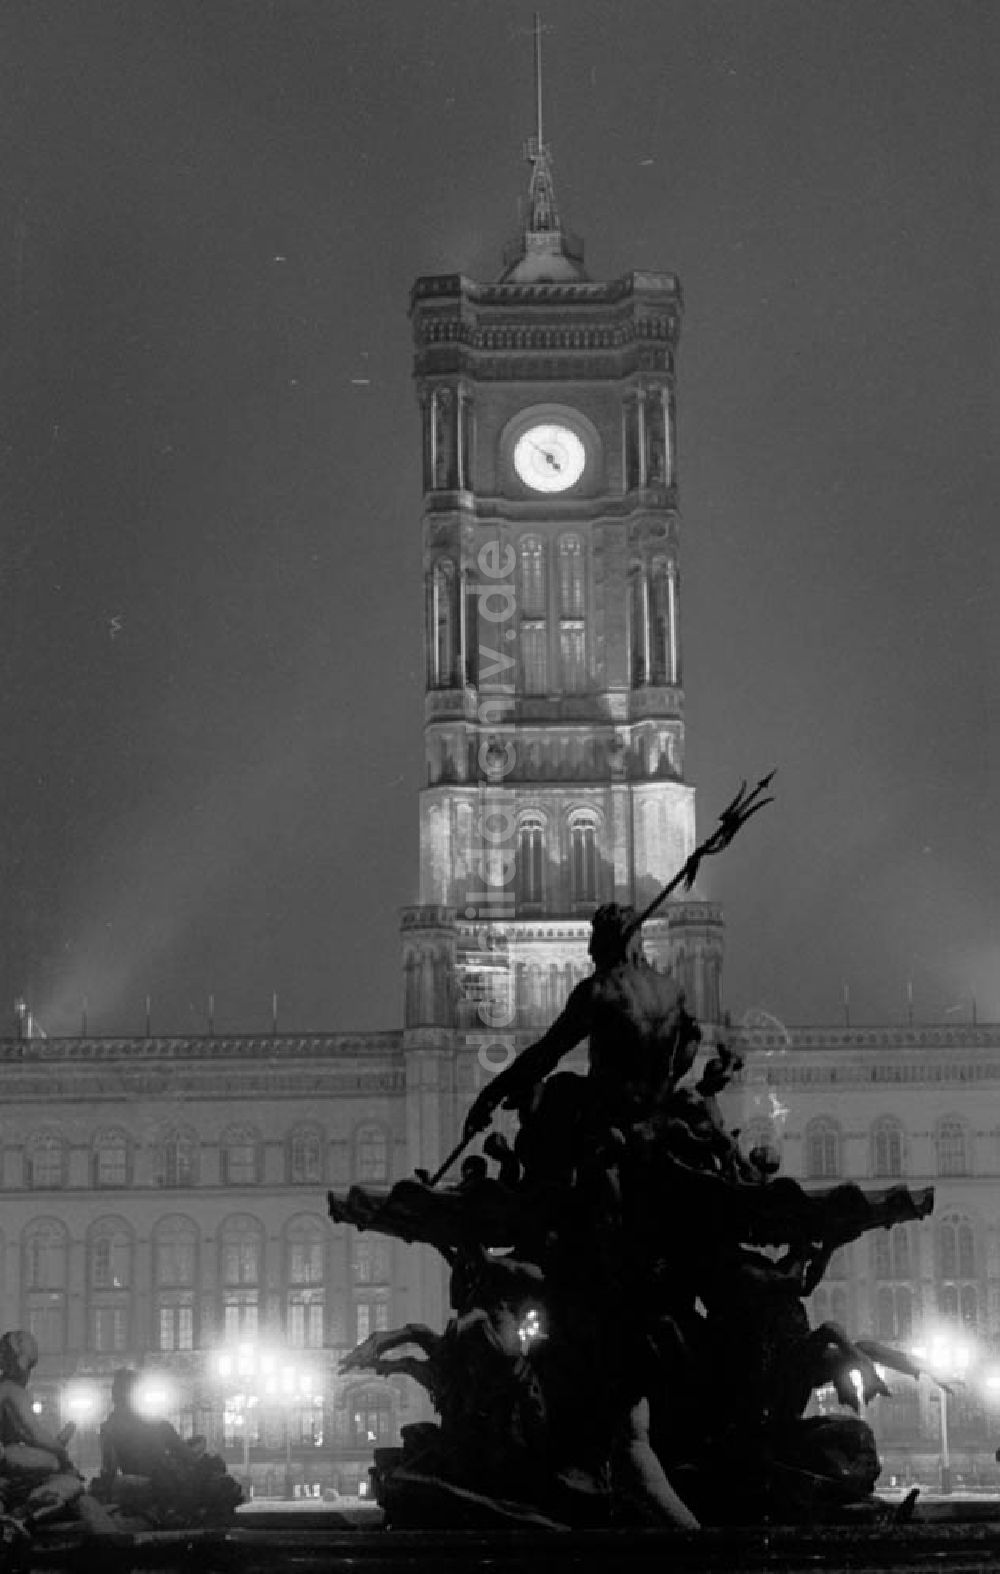 Berlin bei Nacht von oben - 29.12.1986 Berlin, das Rote Rathaus bei Nacht.